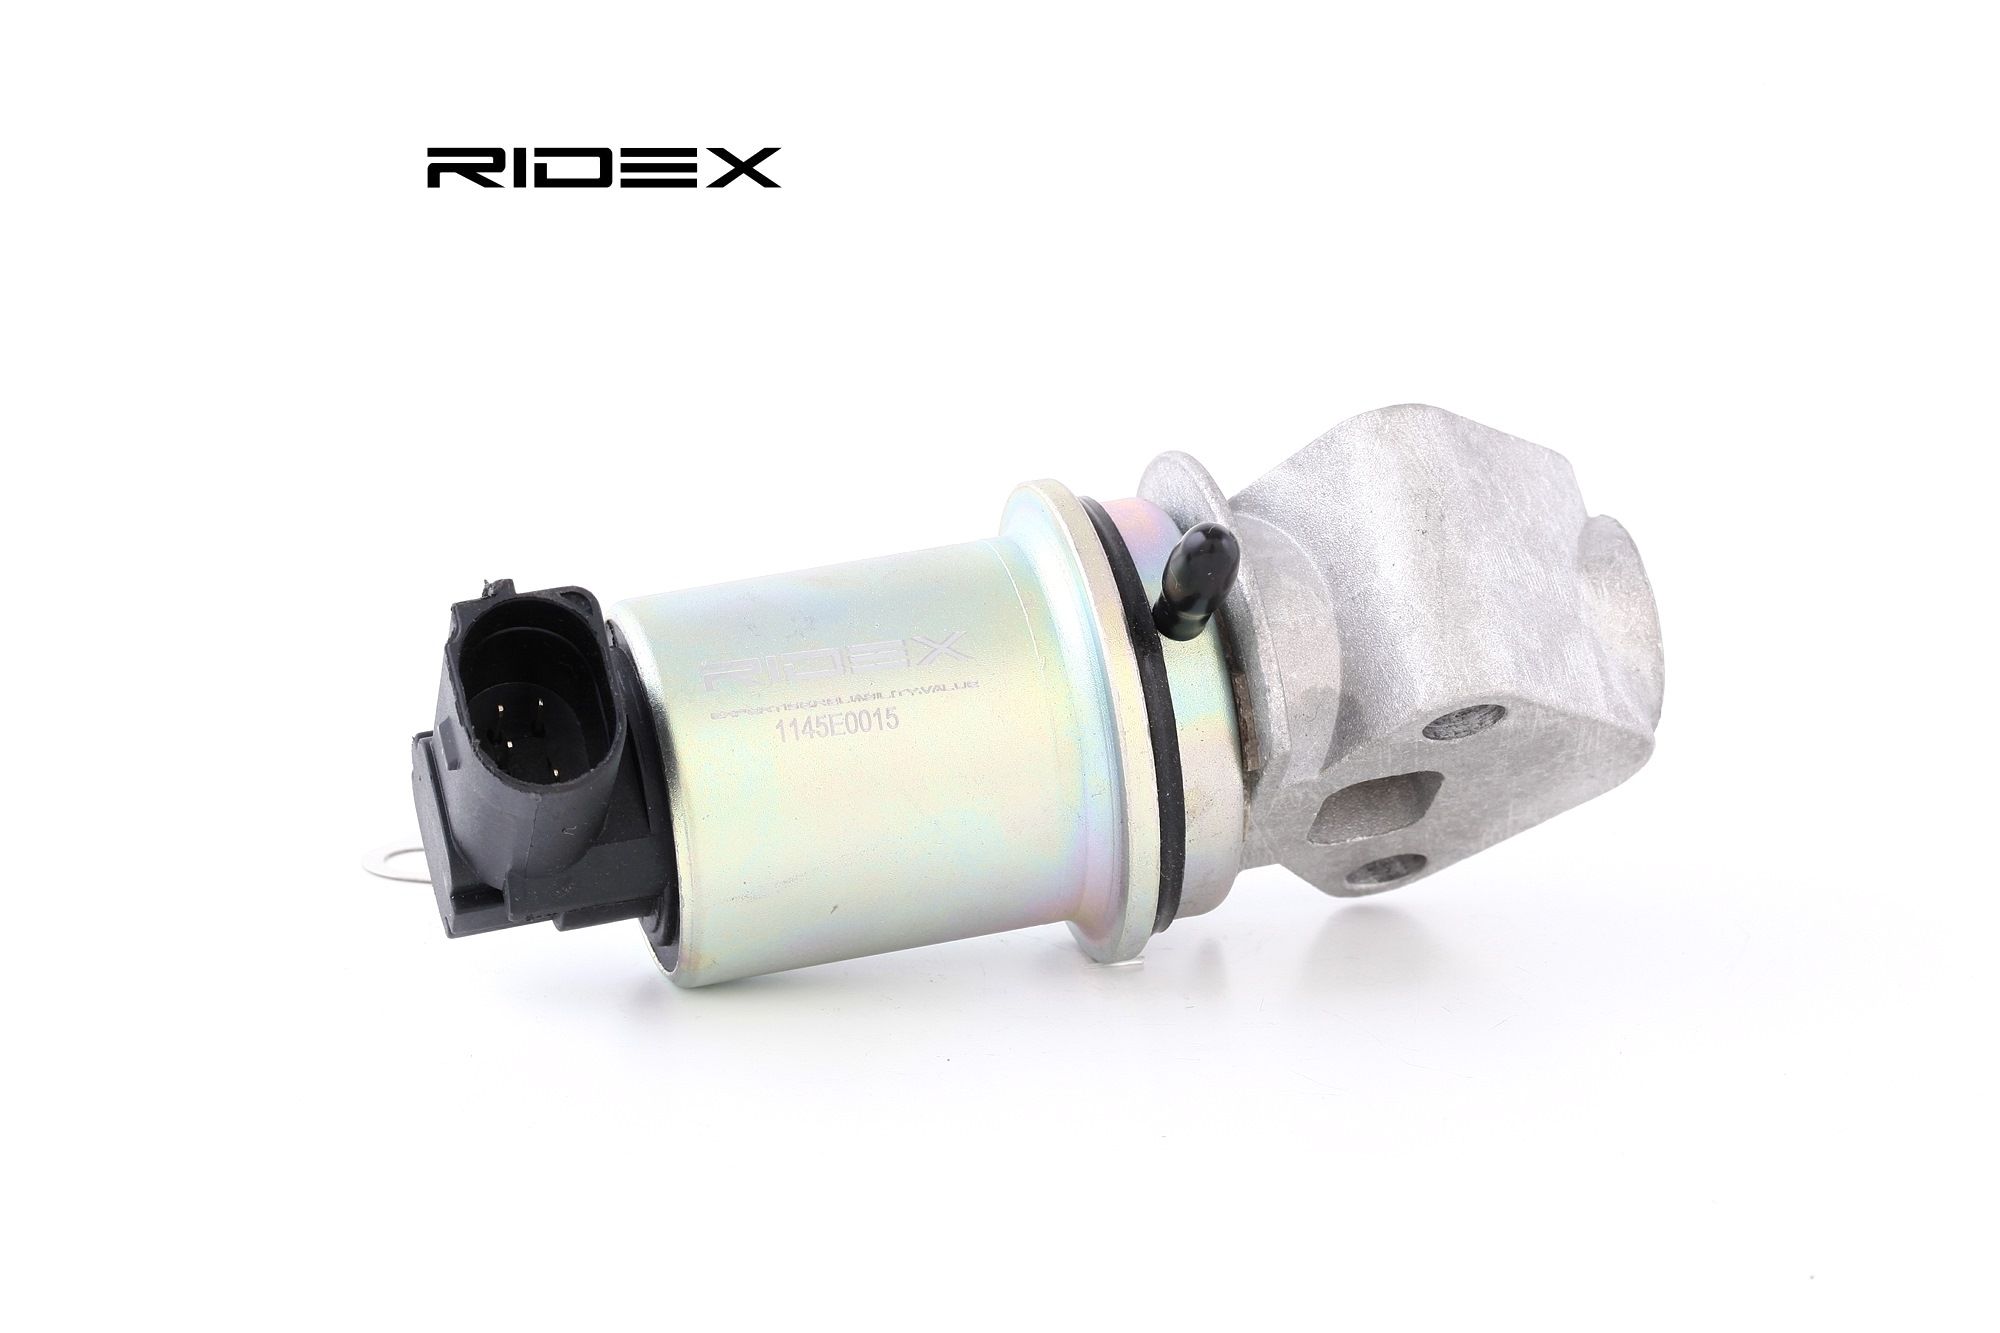 RIDEX AGR-Ventil 1145E0015